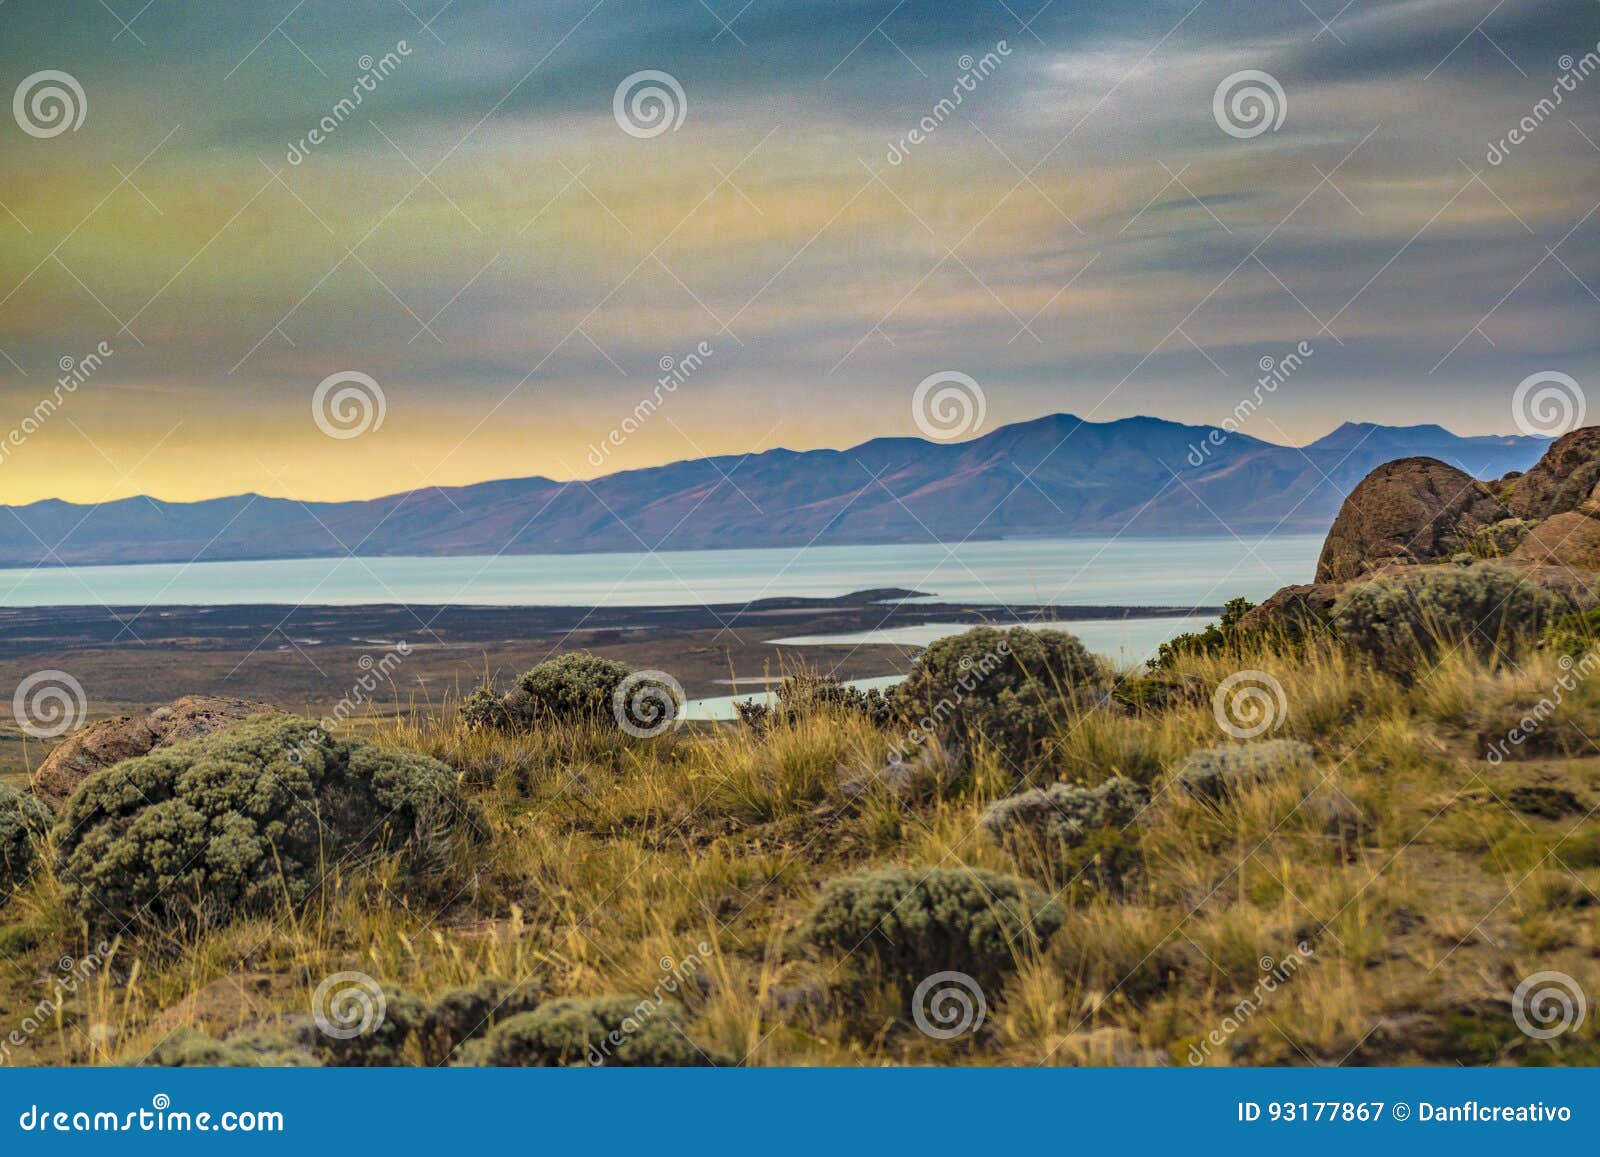 mirador de las aguilas viewpoint, patagonia, argentina